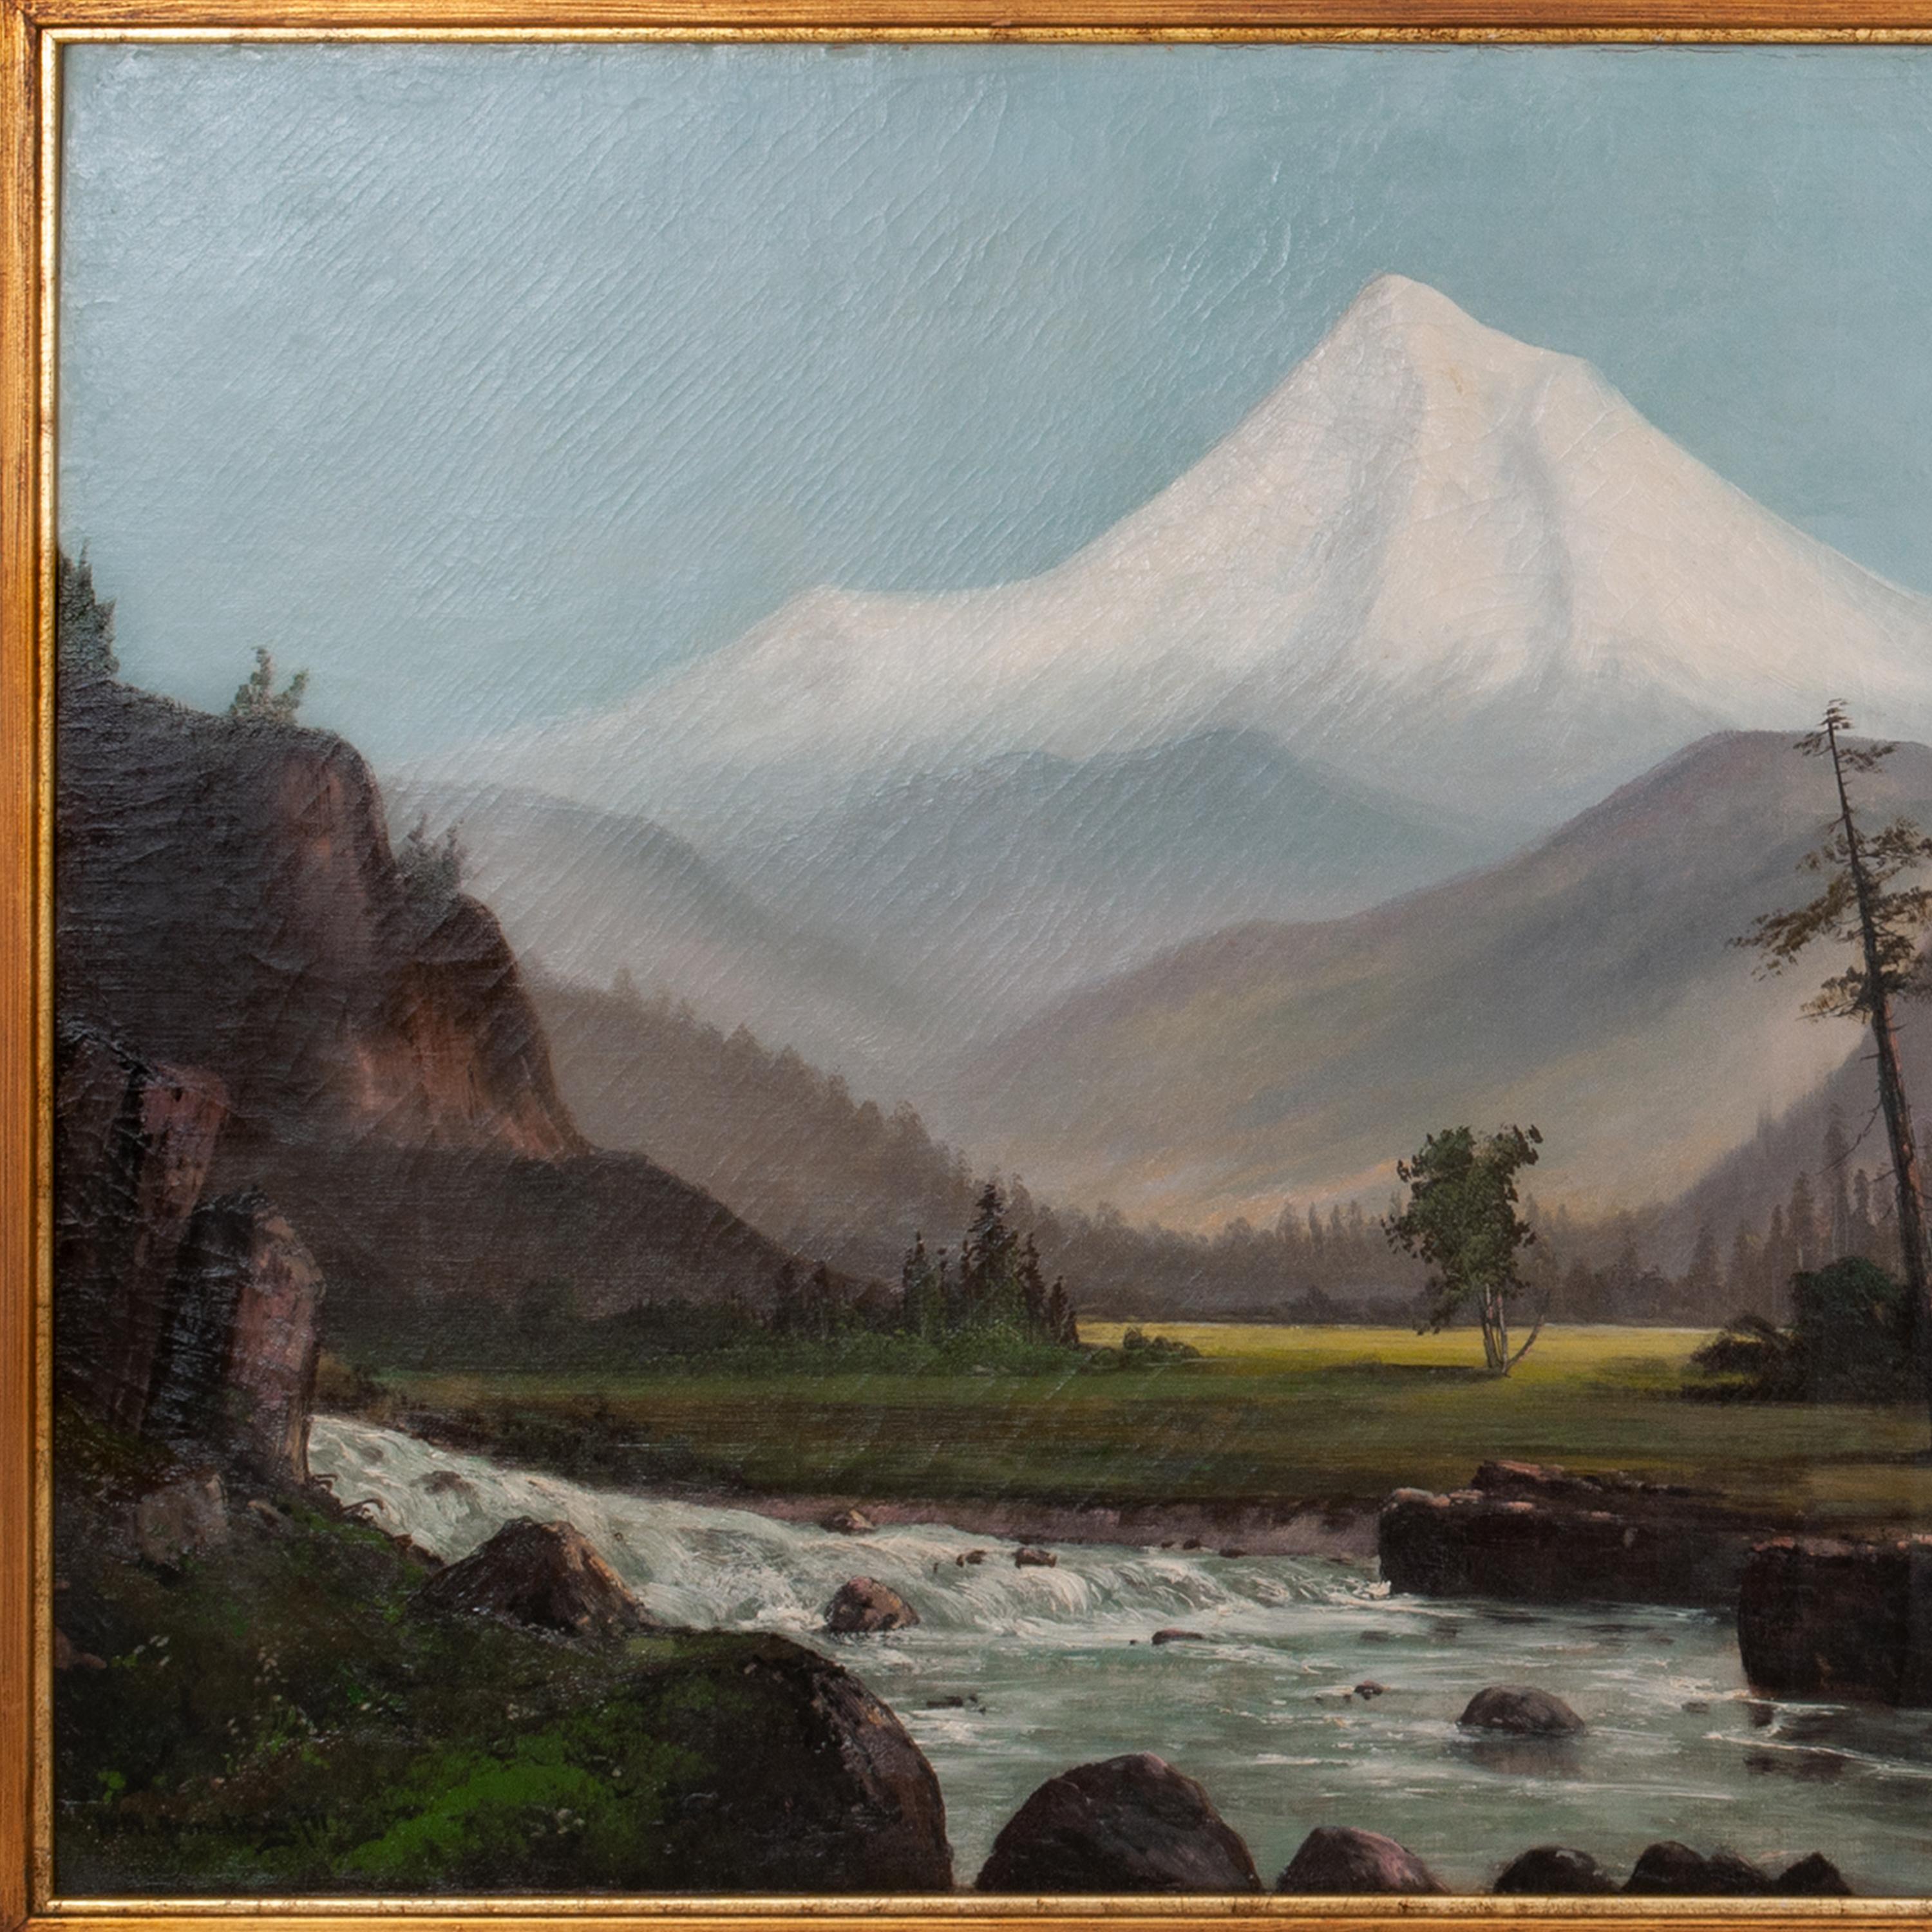 Peinture à l'huile ancienne de William Weaver Armstrong, paysage de mont Hood dans l'Oregon, 1885 - Réalisme américain Painting par William Weaver Armstrong 